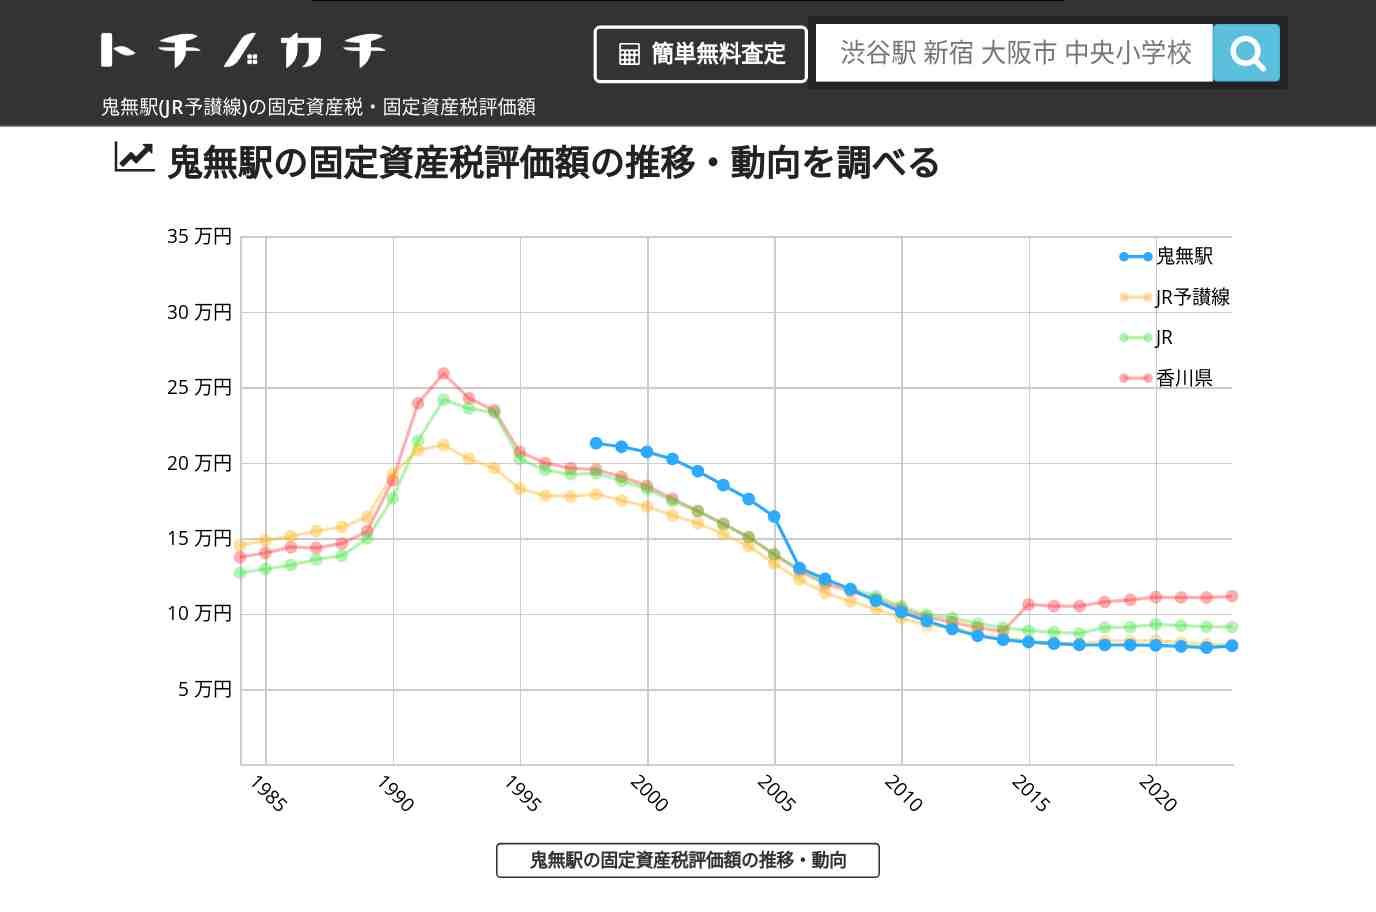 鬼無駅(JR予讃線)の固定資産税・固定資産税評価額 | トチノカチ